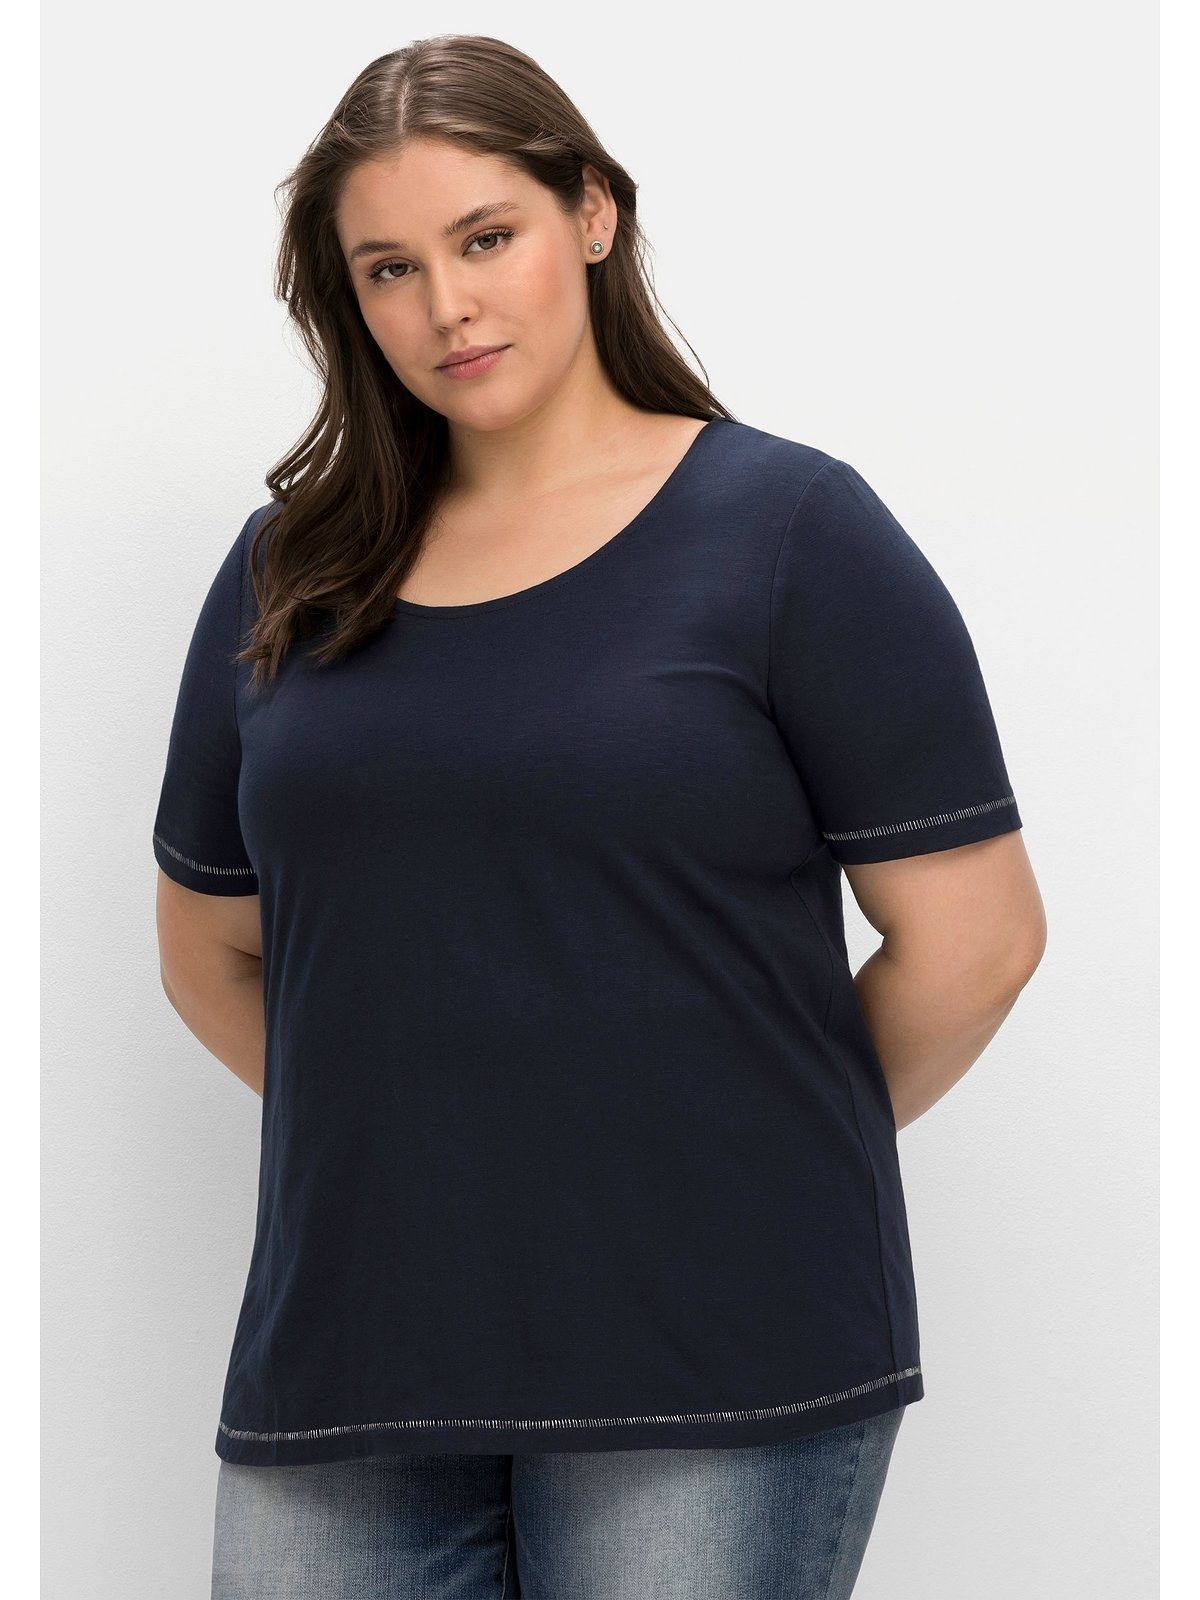 nachtblau auf Sheego der Print Größen Schulter Große mit hinten T-Shirt